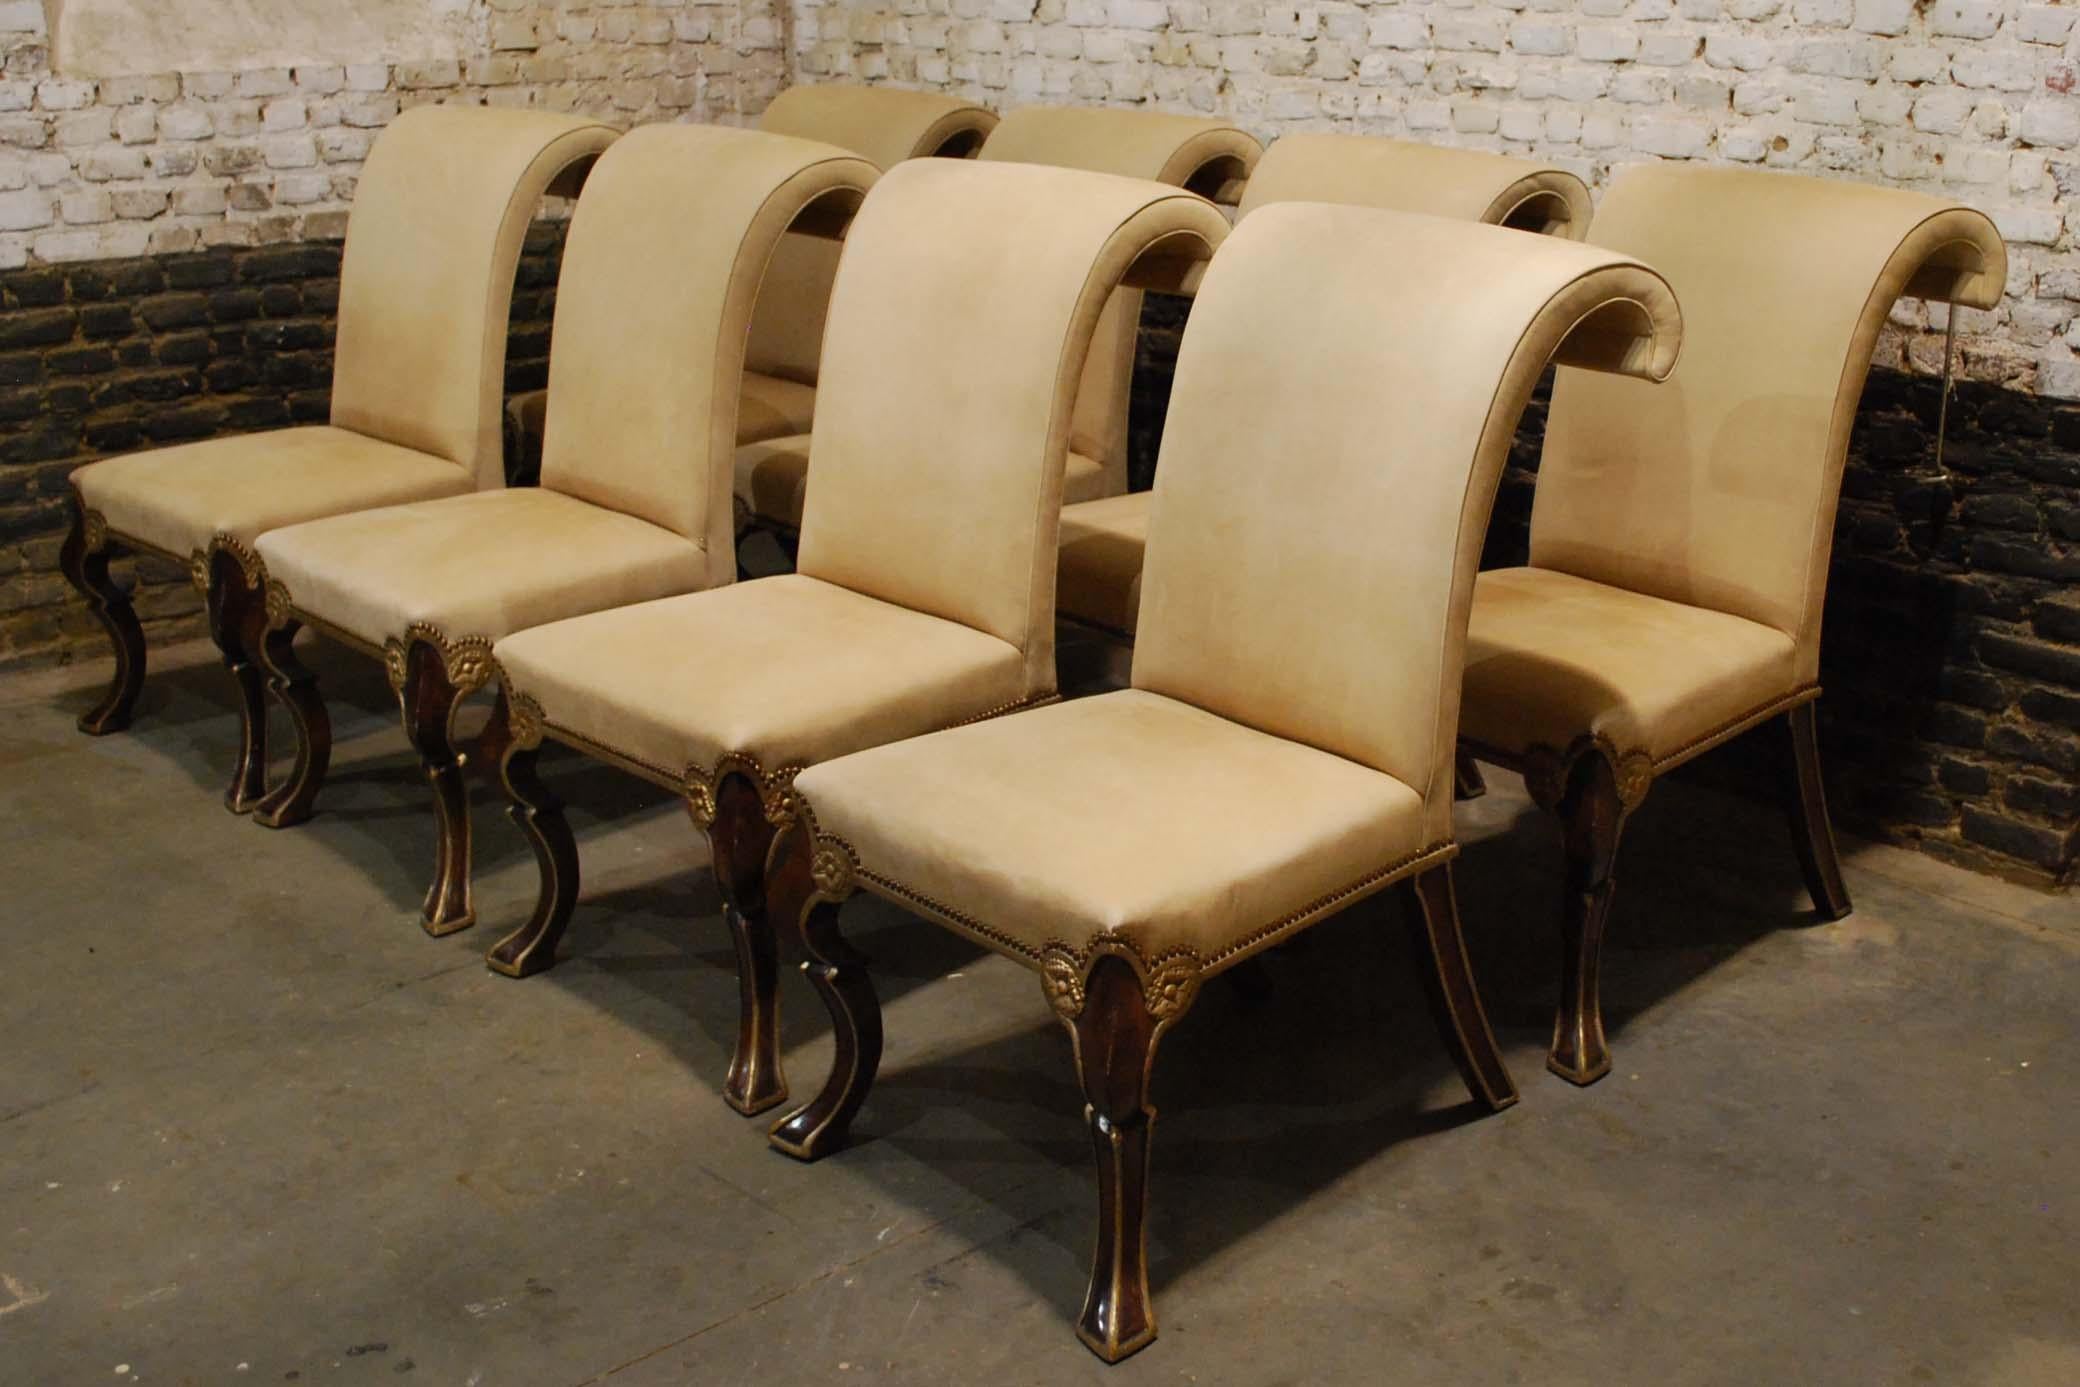 Ein exklusiver und großer Satz von acht handgefertigten Puccini-Esszimmerstühlen von Rose Tarlow Melrose House.
Die Stühle haben eine straffe Sitzfläche und Rückenlehne in burgunderfarbener Lackierung mit 22-karätigem Goldbesatz. Die